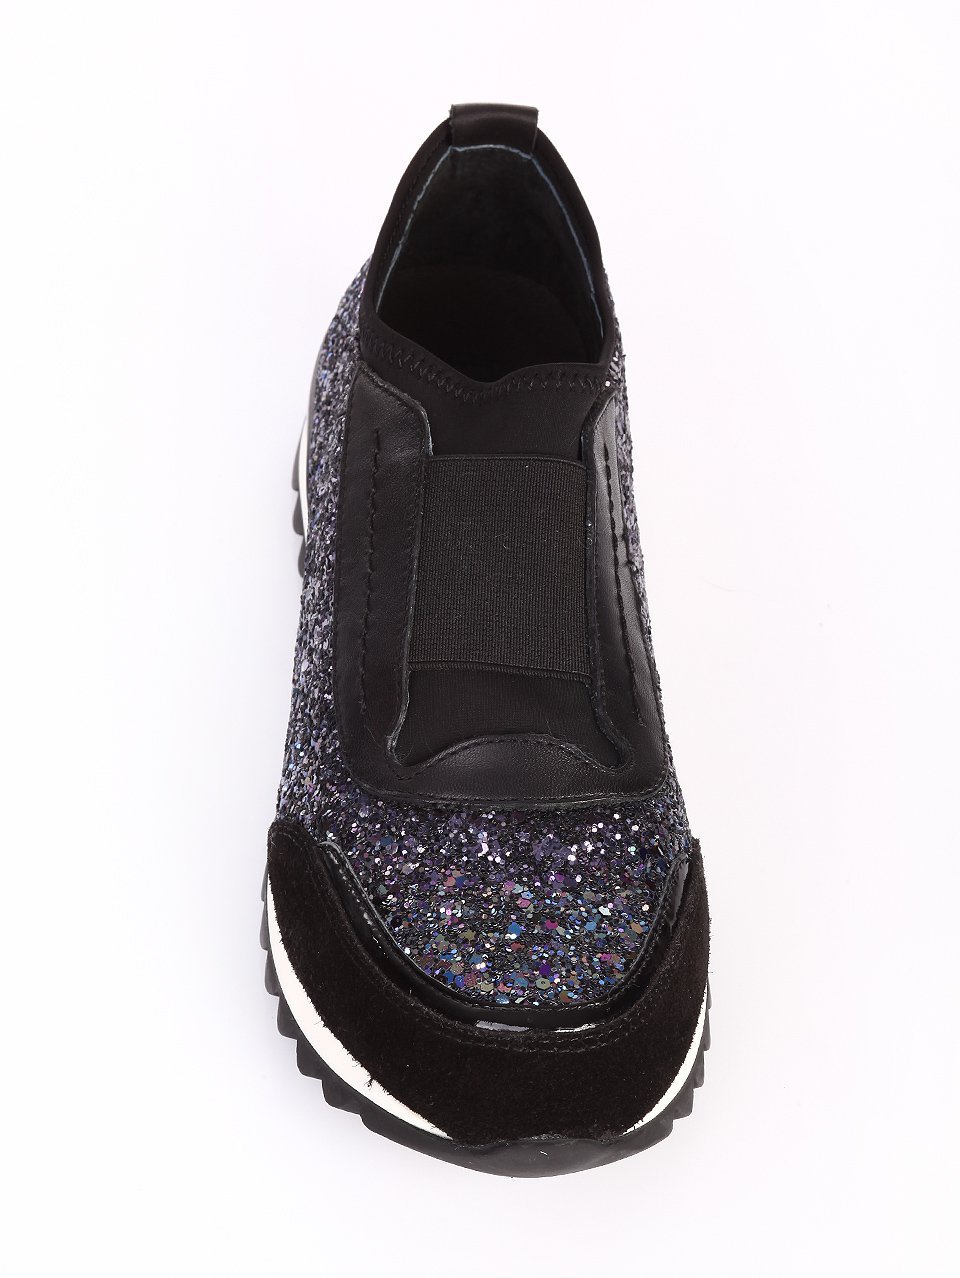 Ежедневни дамски обувки от естествен велур 3I-16453 black suede